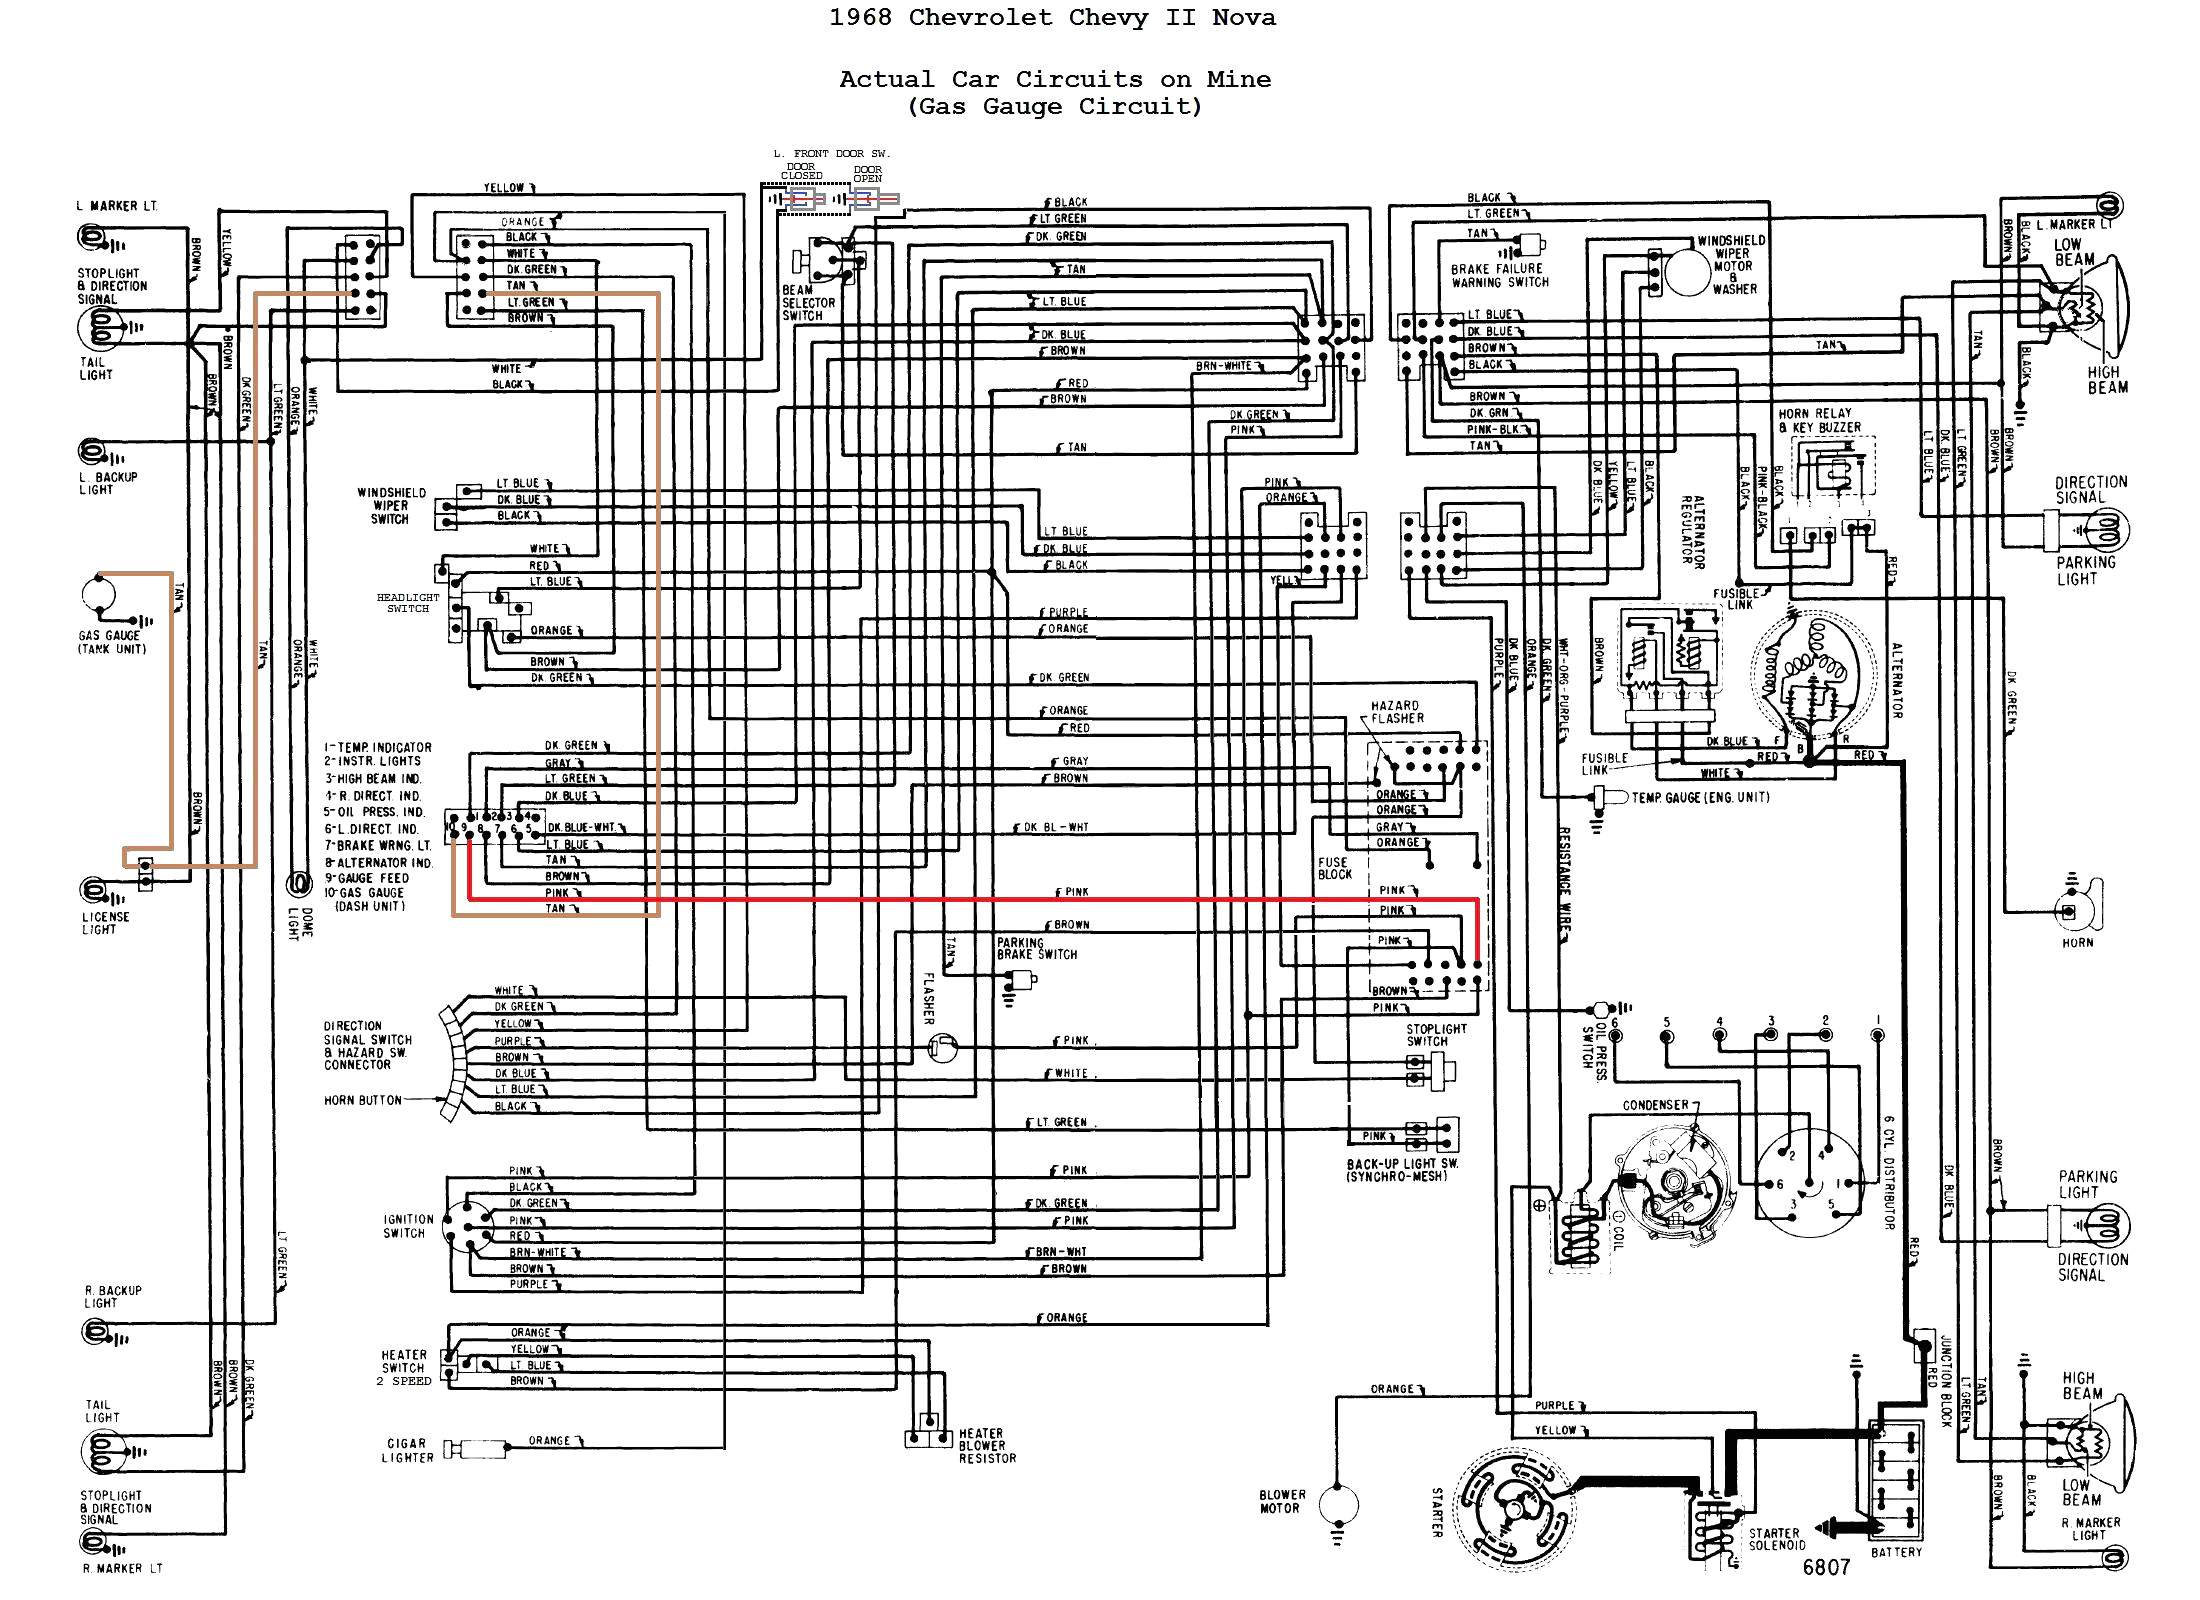 wiring diagram 1971 chevy cheyenne super get free image about wiring 71 chevy truck wiring diagram